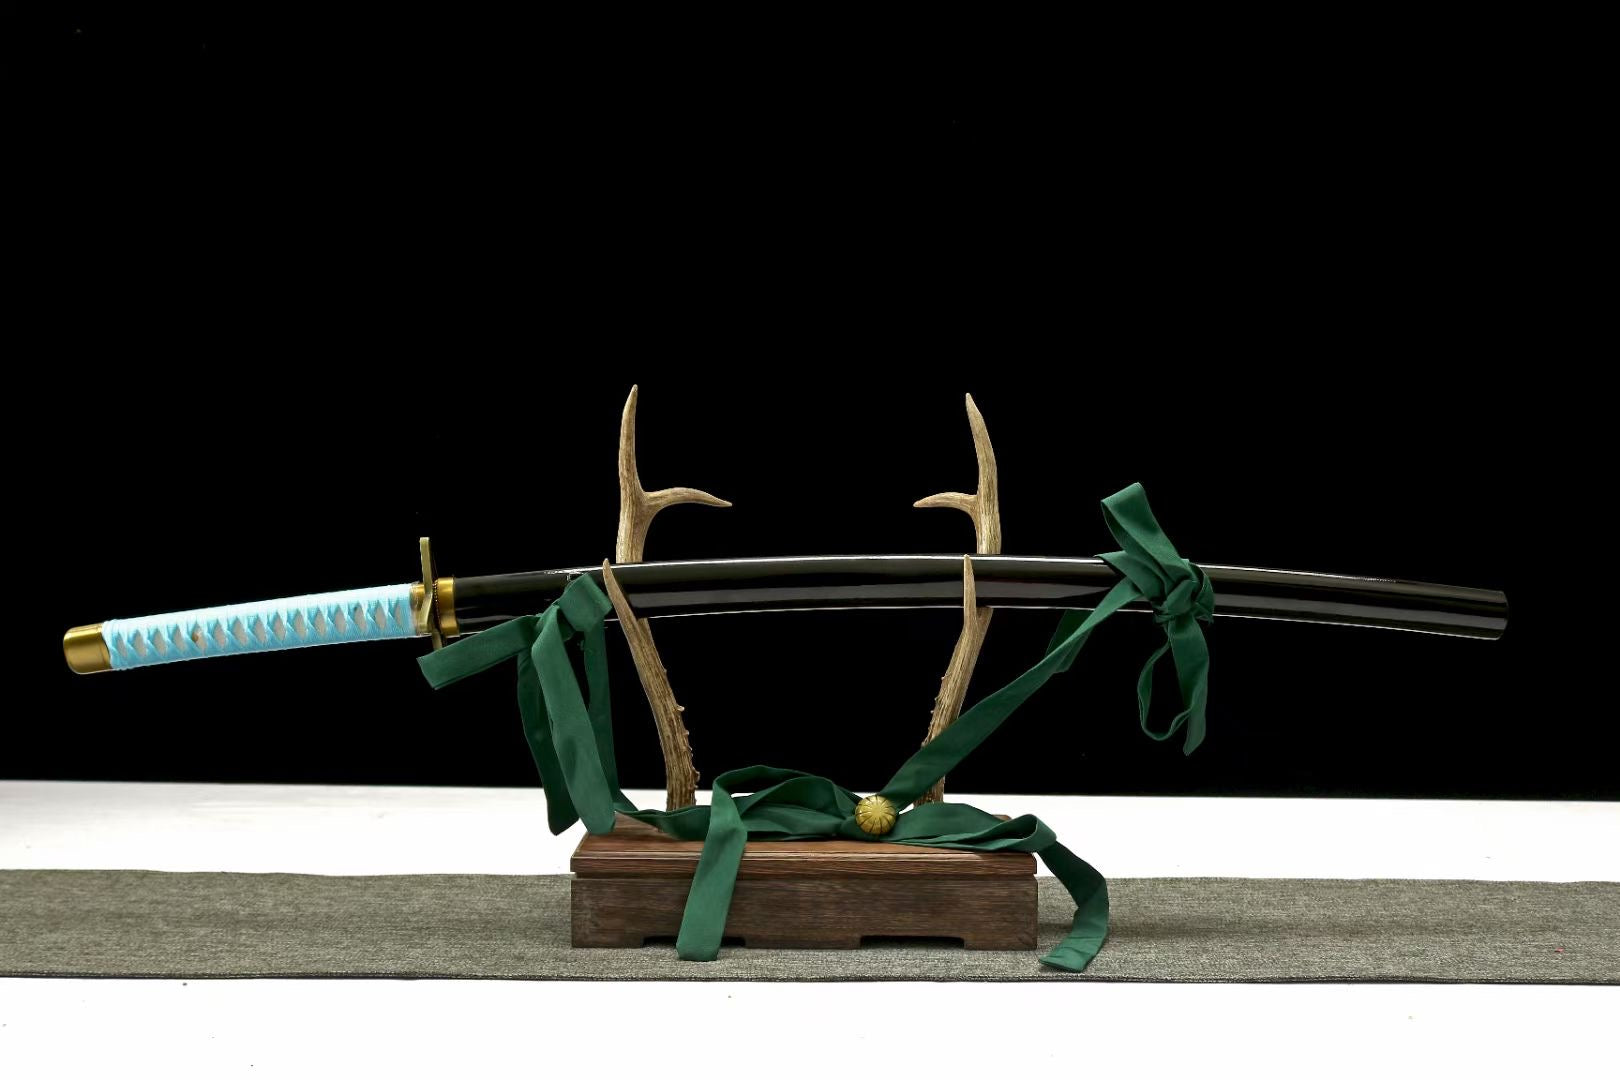 Anime Katana Sword,Demon Slayer Cospaly,Japanese Samurai Sword Real Handmade Anime Katana 1060 Carbon Steel Full Tang